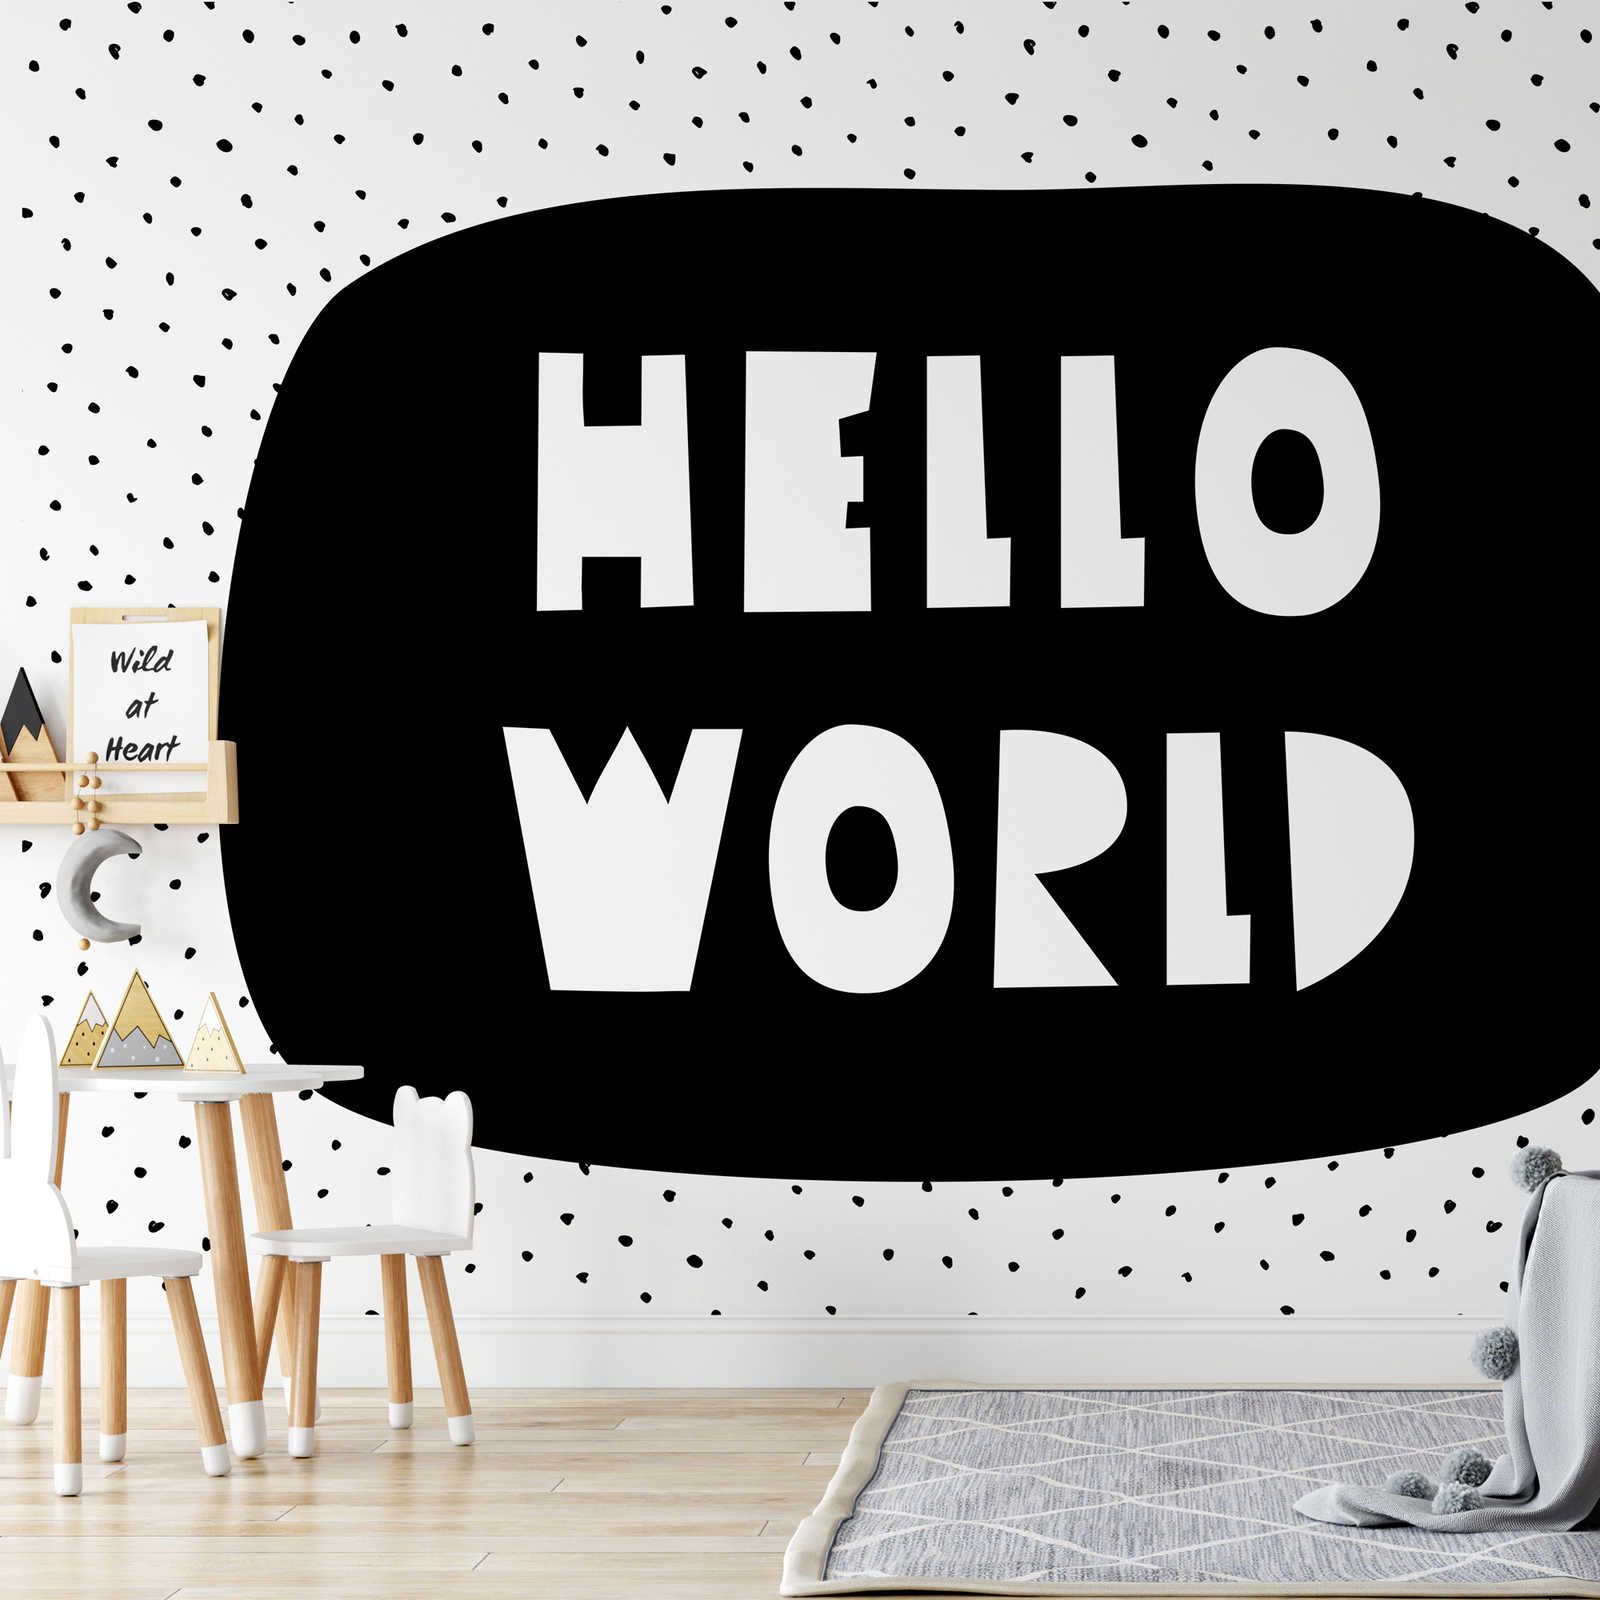 Fotomurali per la camera dei bambini con scritta "Hello World" - tessuto non tessuto testurizzato
